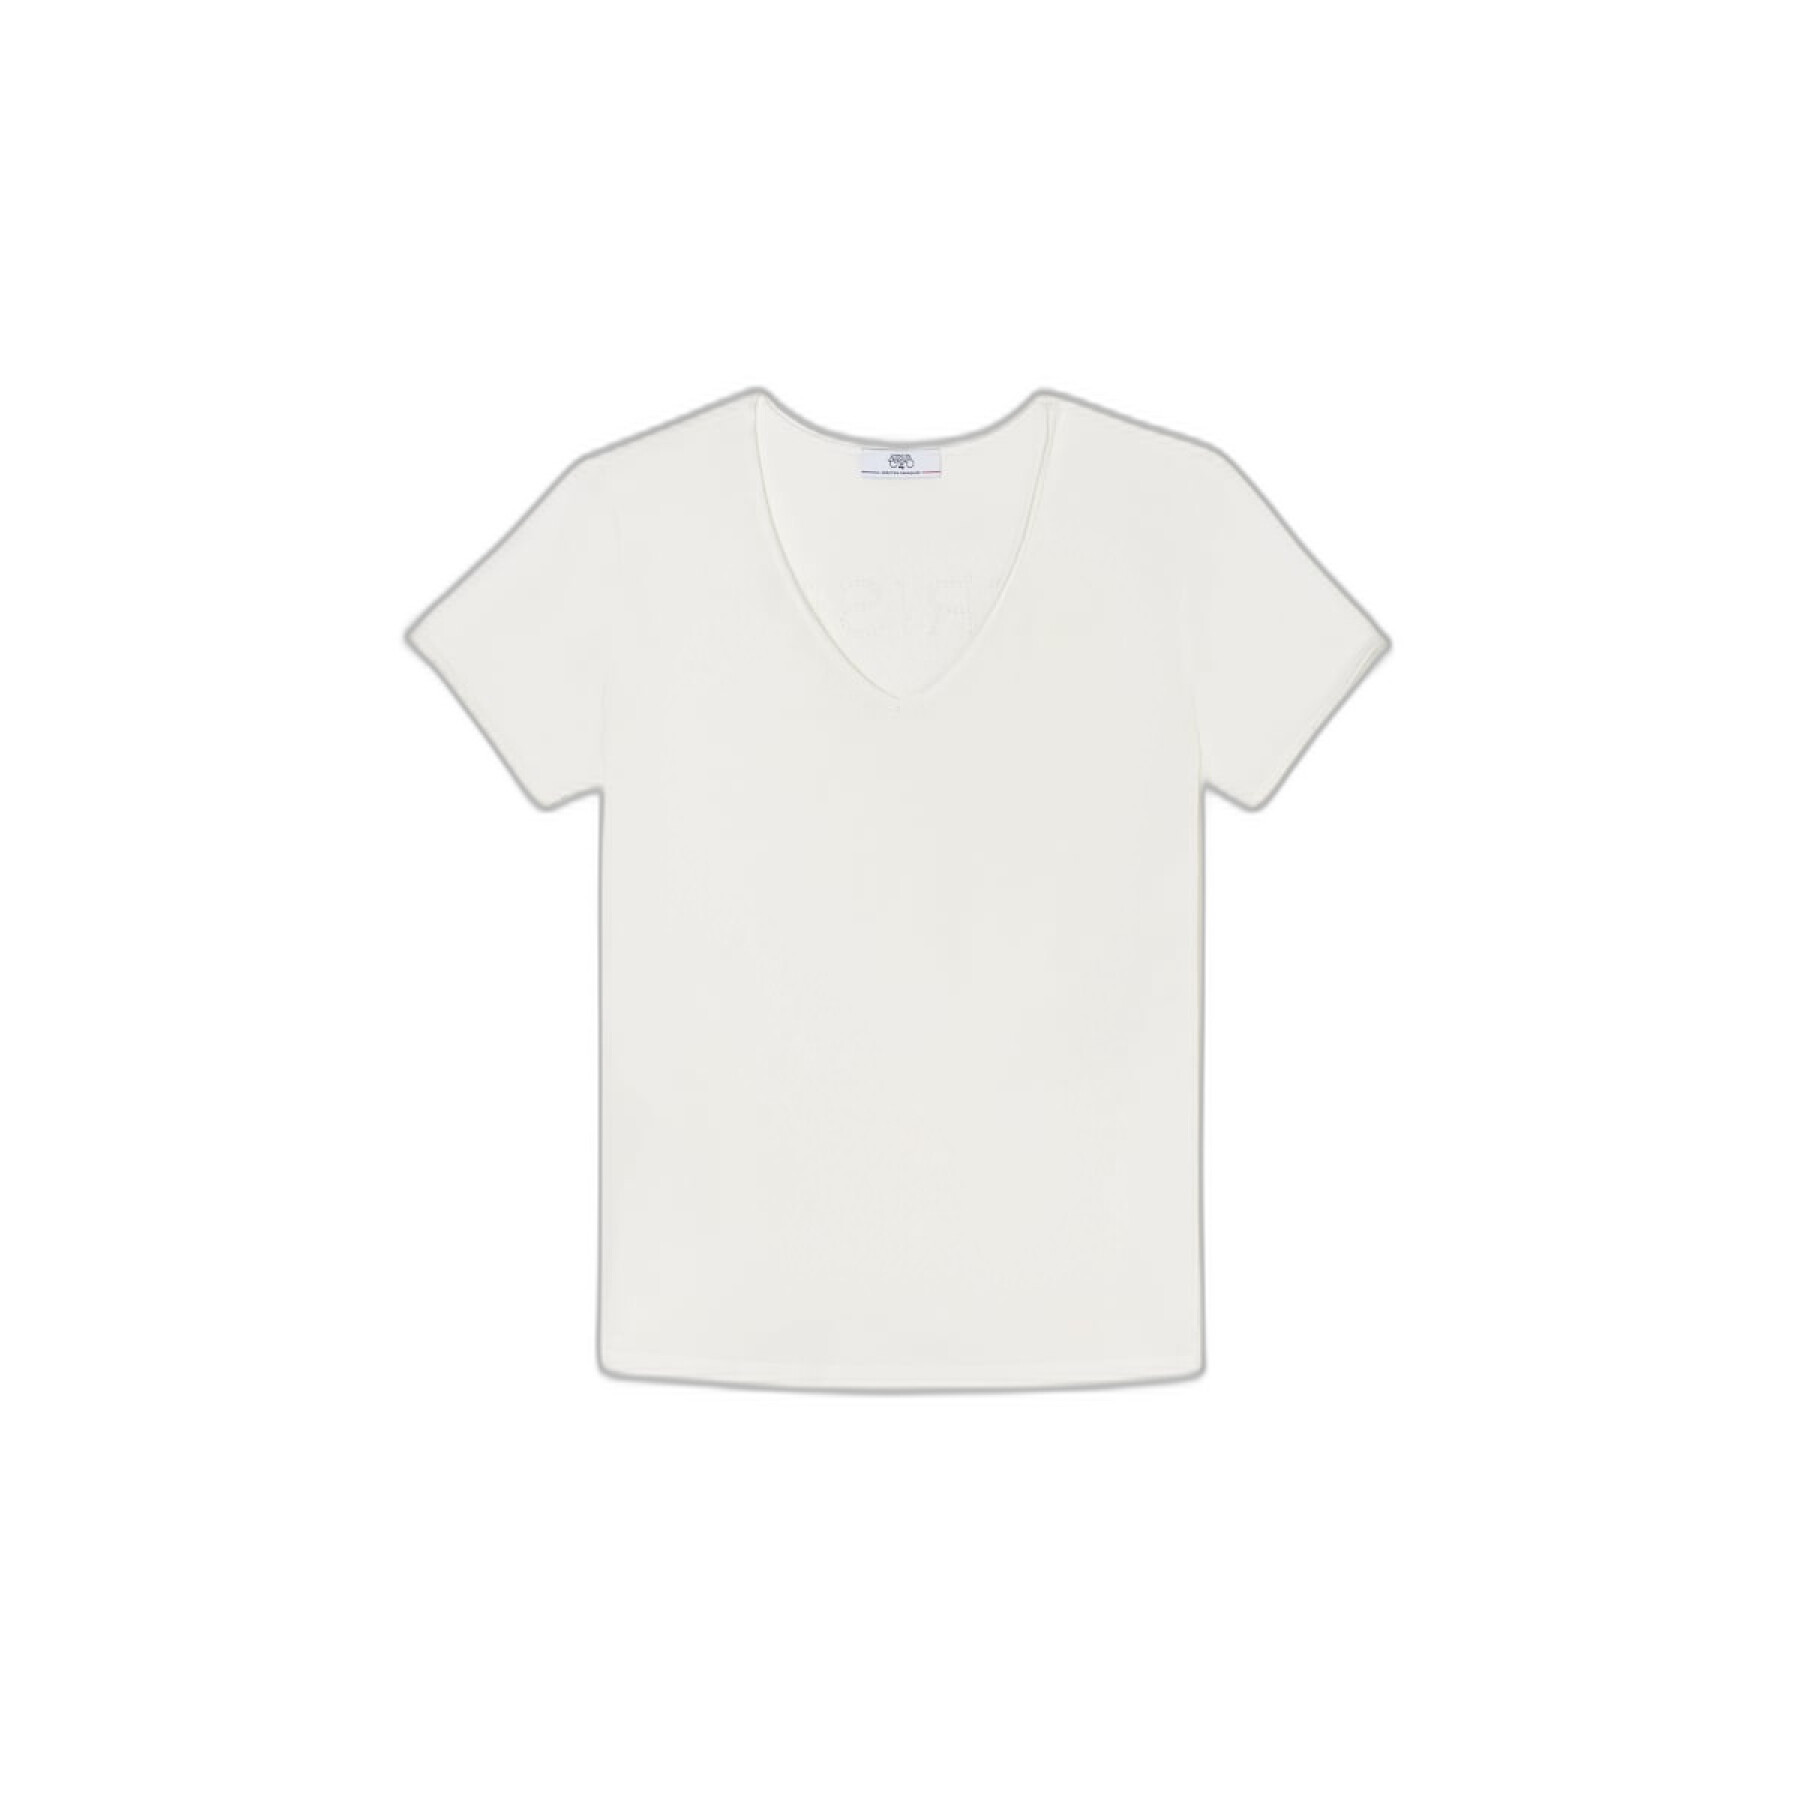 T-shirt des Vêtements Femme femme - cerises Parodia - Temps et T-shirts débardeurs Le -